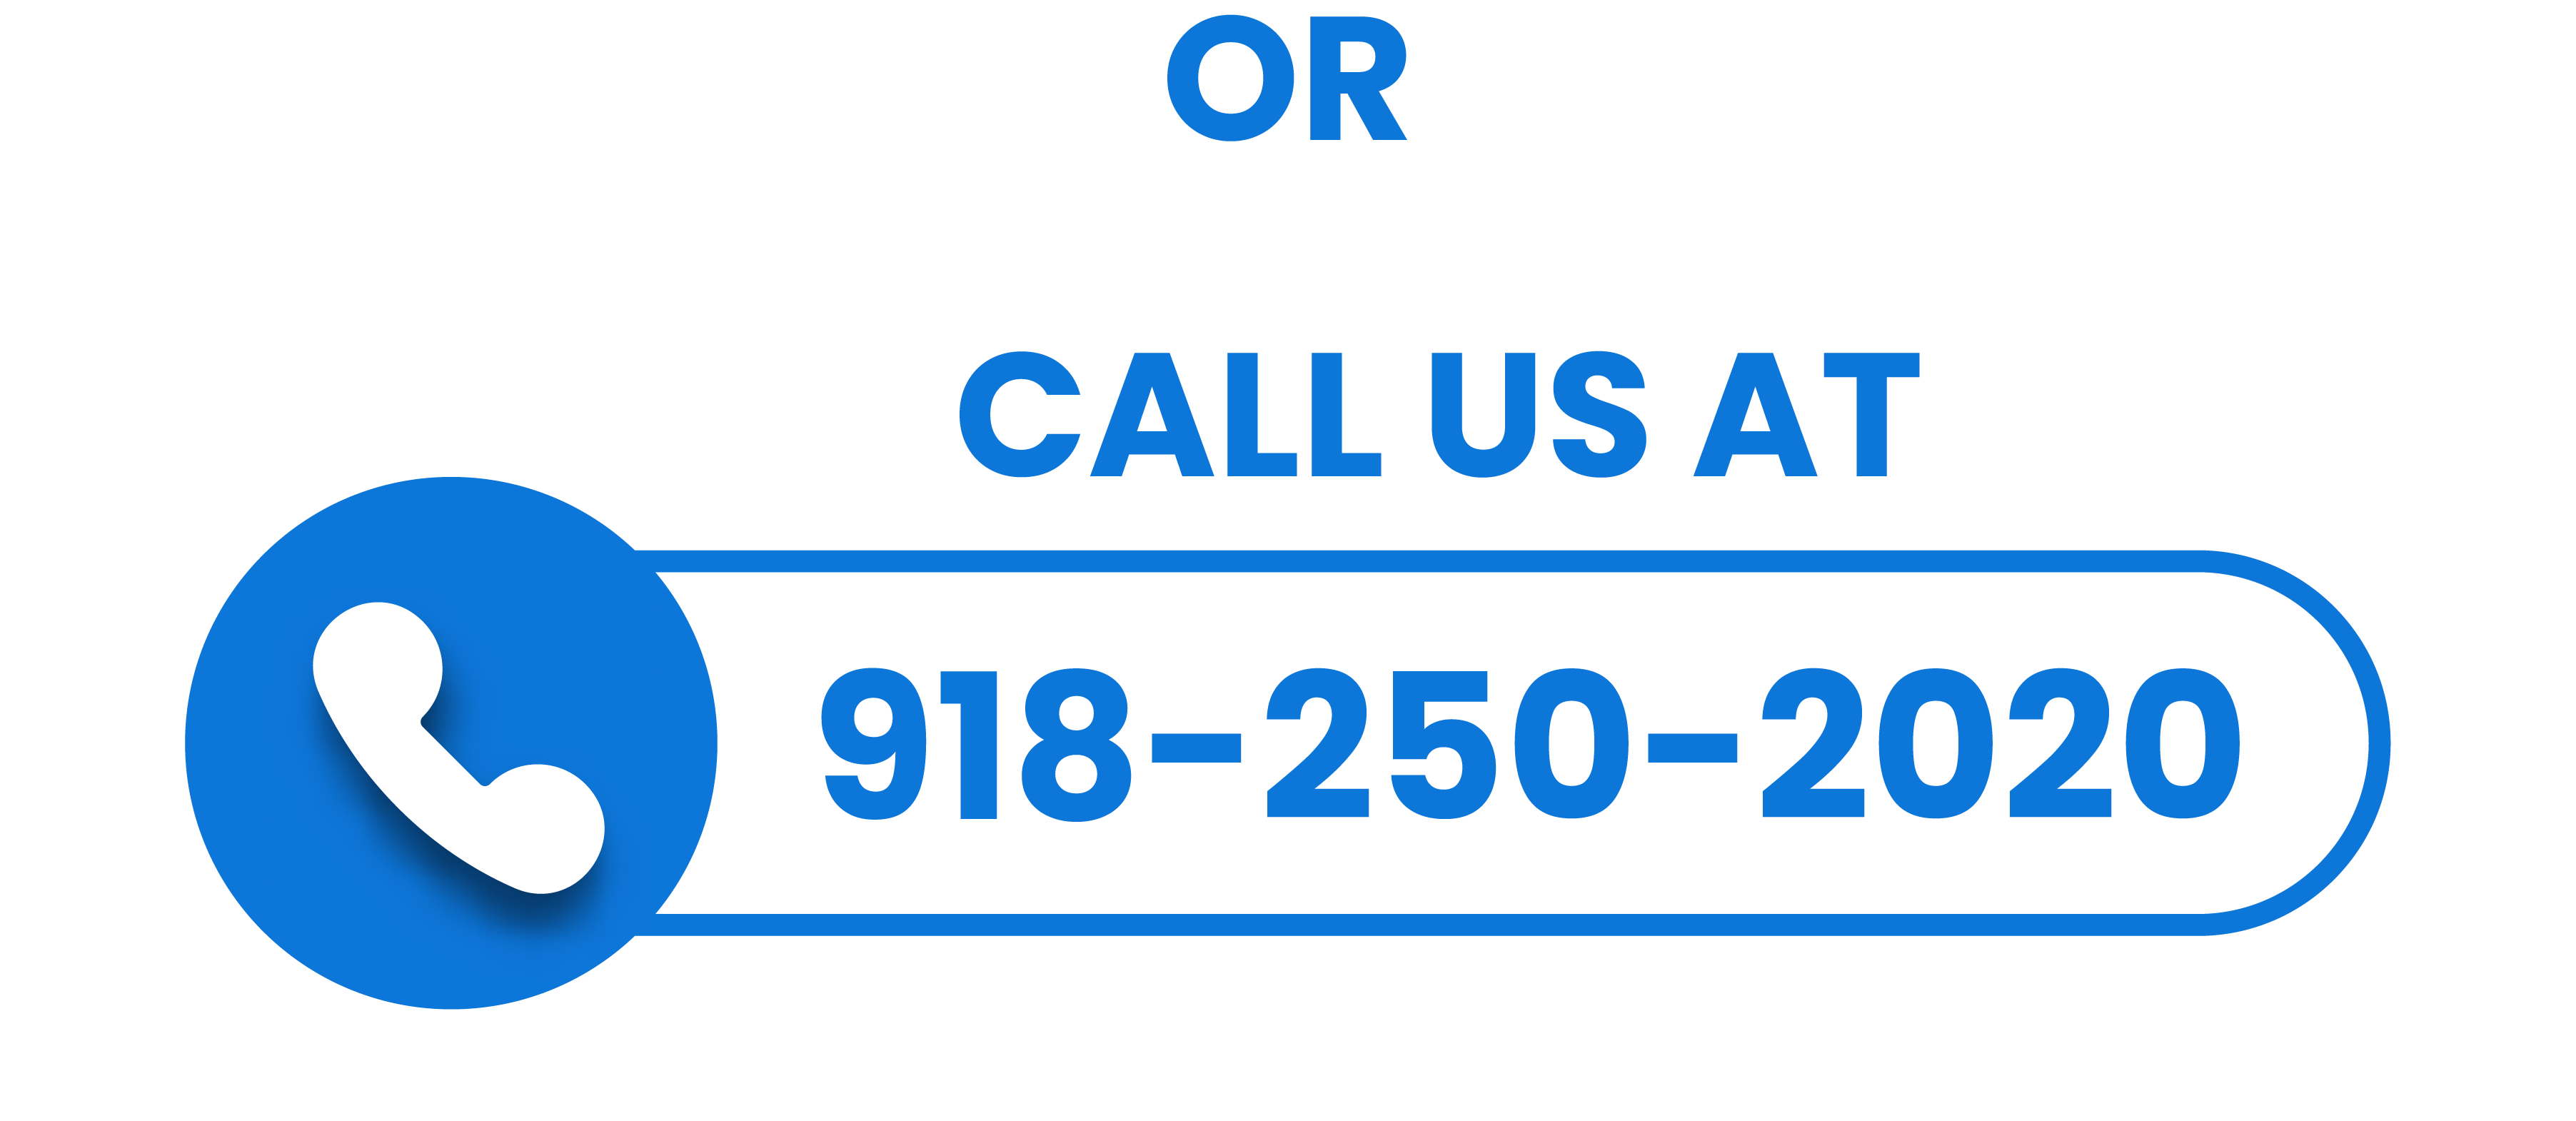 Or Call us at 918-250-2020